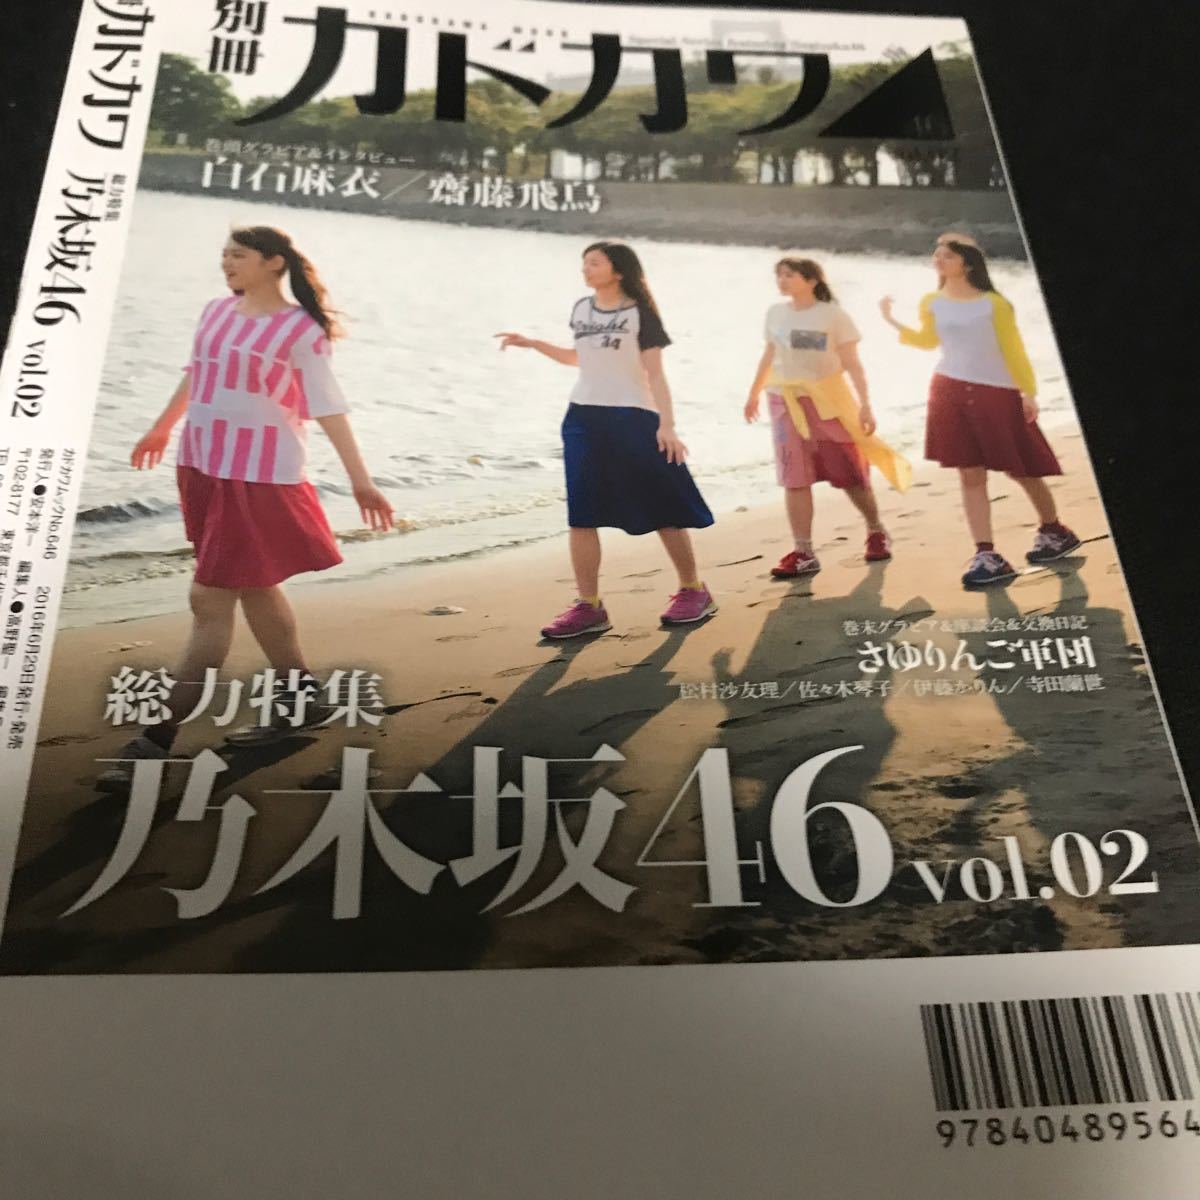 別冊カドカワ総力特集乃木坂46 vol.02